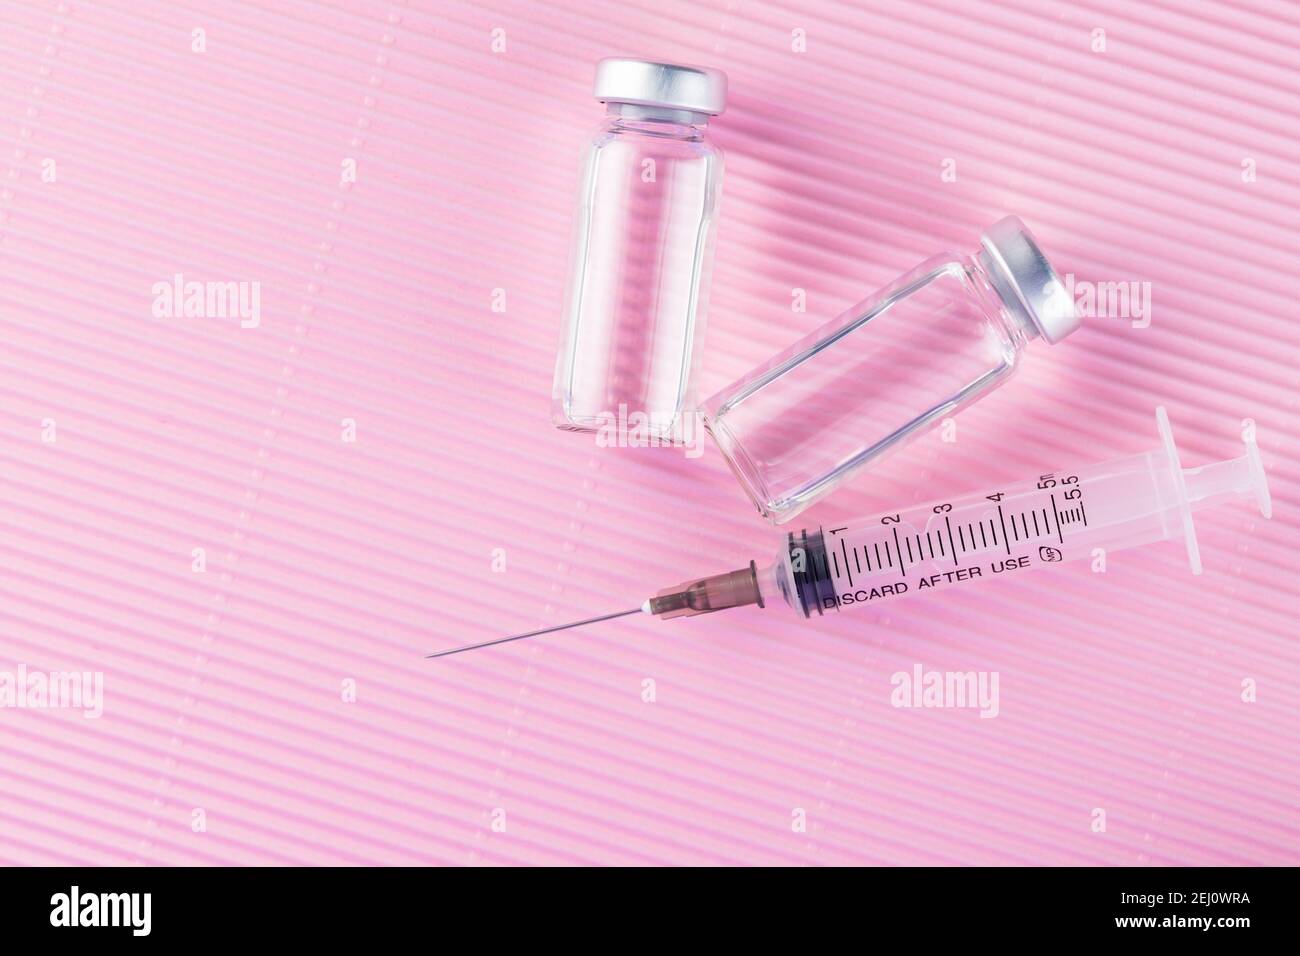 Concetto di cura sanitaria con iniezione di vaccino e siringa. Vaccini e siringhe su sfondo rosa per la prevenzione e l'immunizzazione. Spazio di copia. In alto Foto Stock